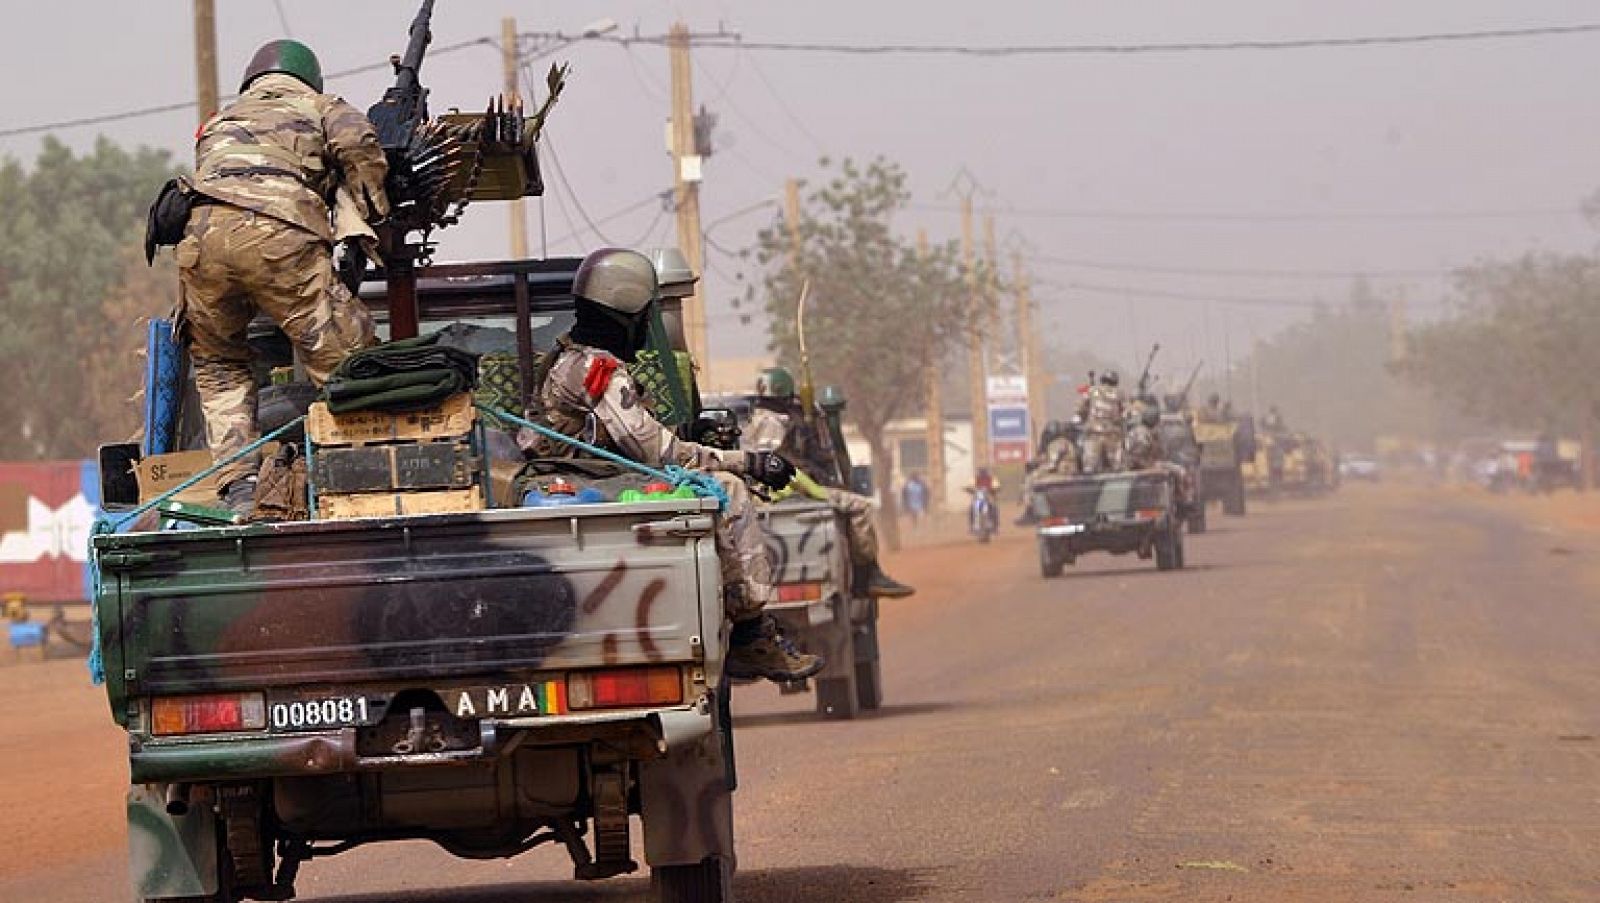 La UE compromete apoyo financiero a Mali a cambio de reformas democráticas 